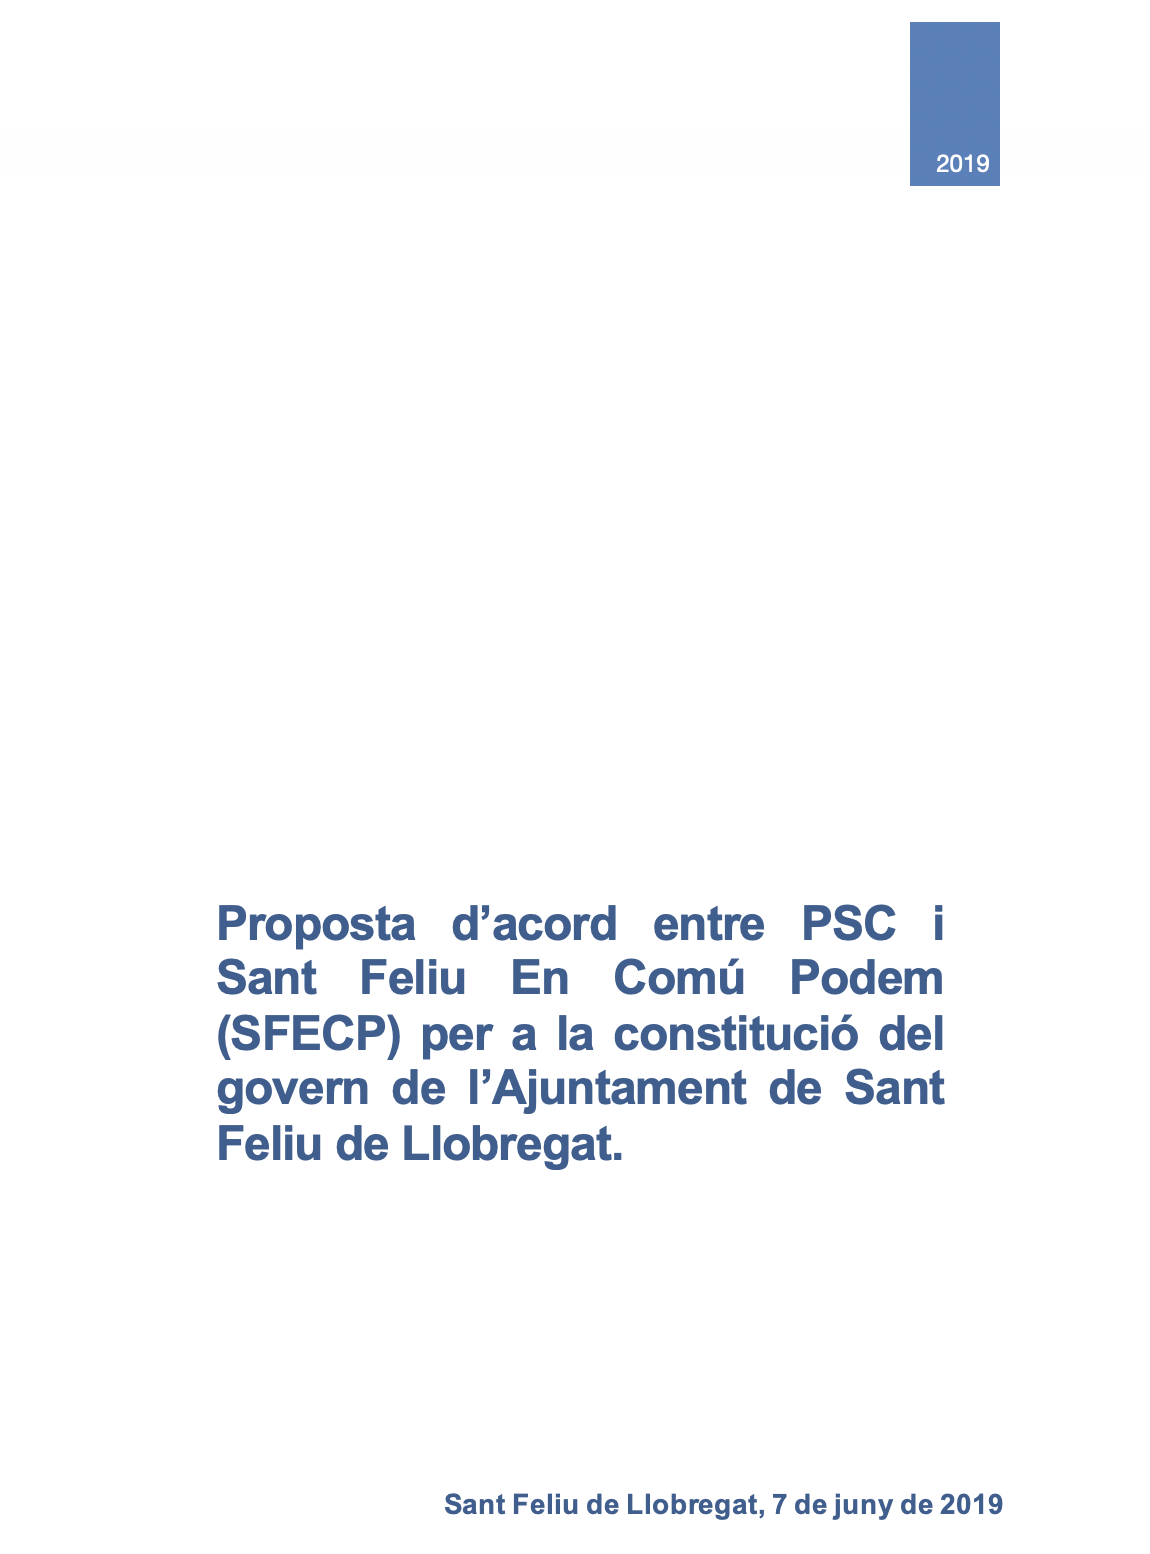 Propuesta de pacto del PSC en SFECP para gobernar Sant Feliu en los próximos 4 años